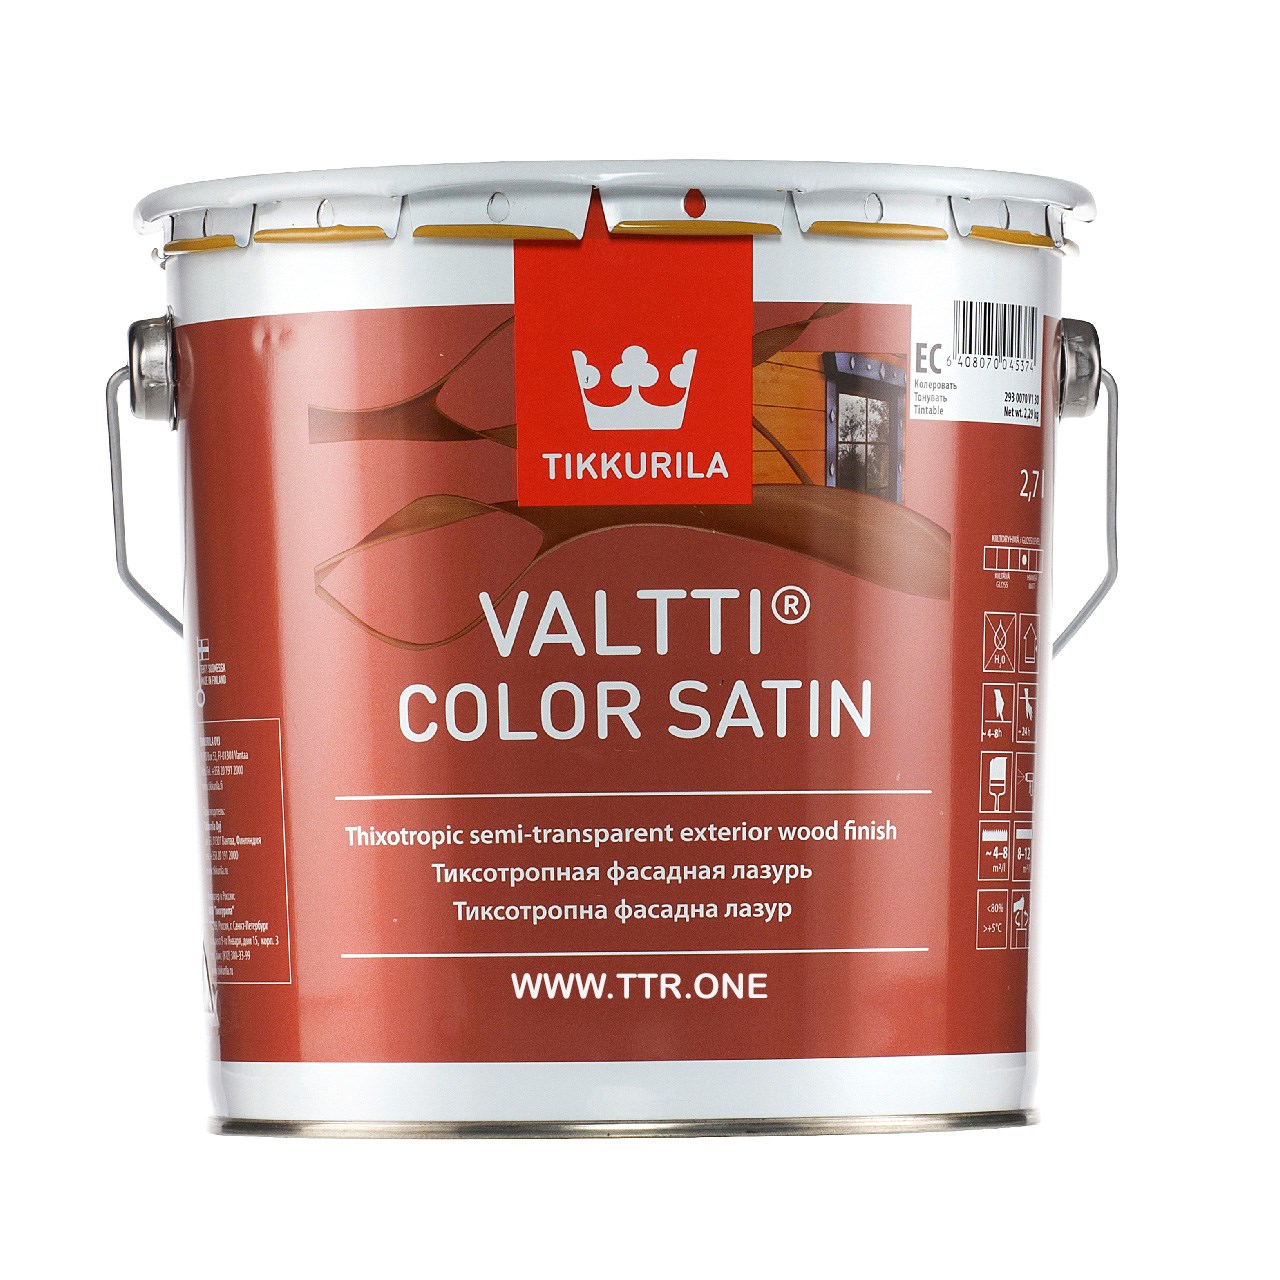 رنگ پایه روغن تیکوریلا مدل Valtti Color Satin 5077 حجم 3 لیتر